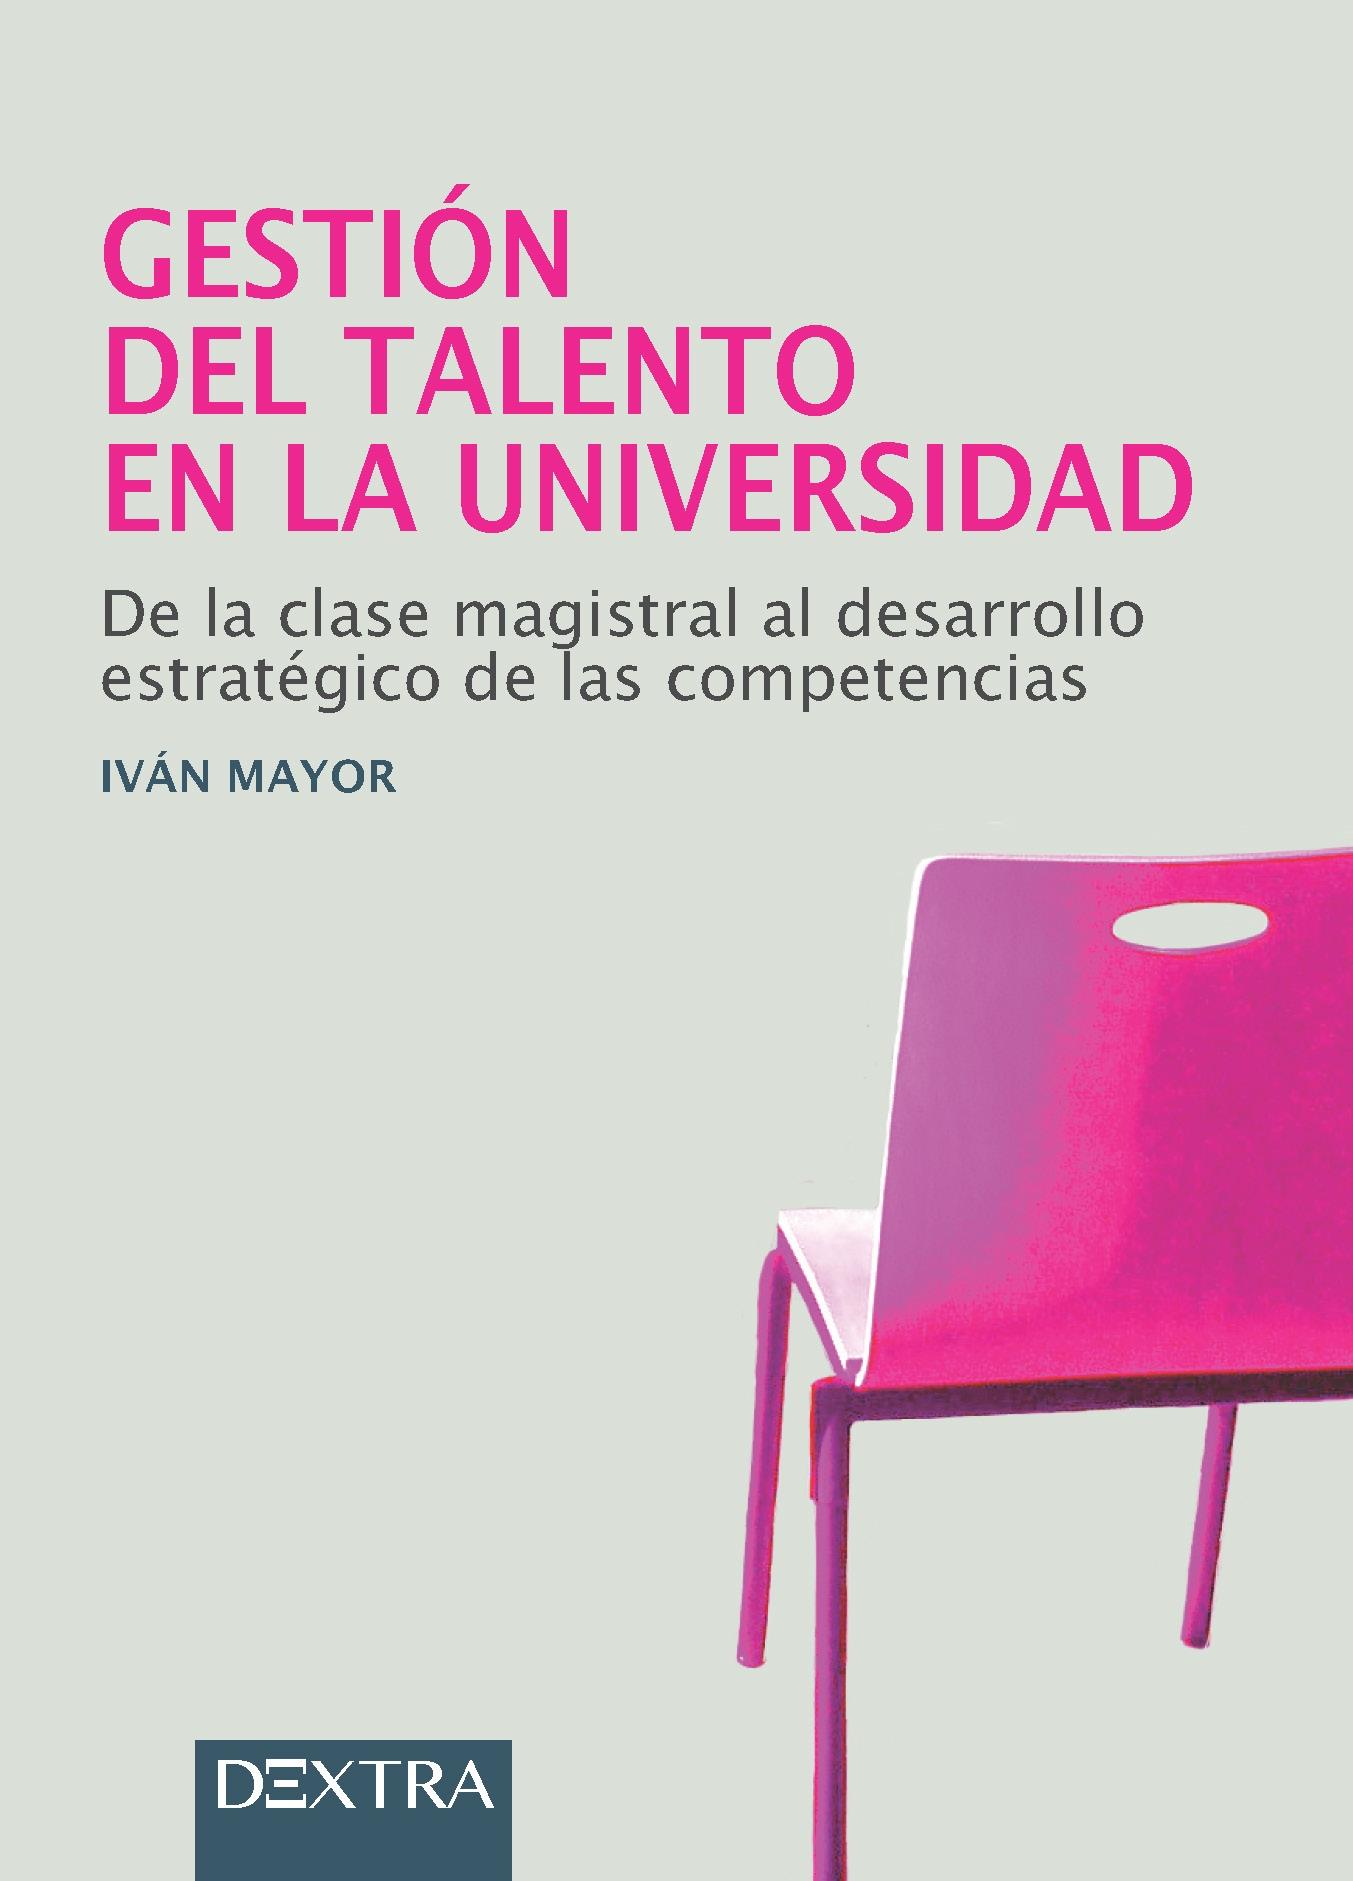 Gestión del talento en la universidad "De la clase magistral al desarrollo estratégico de las competencias"